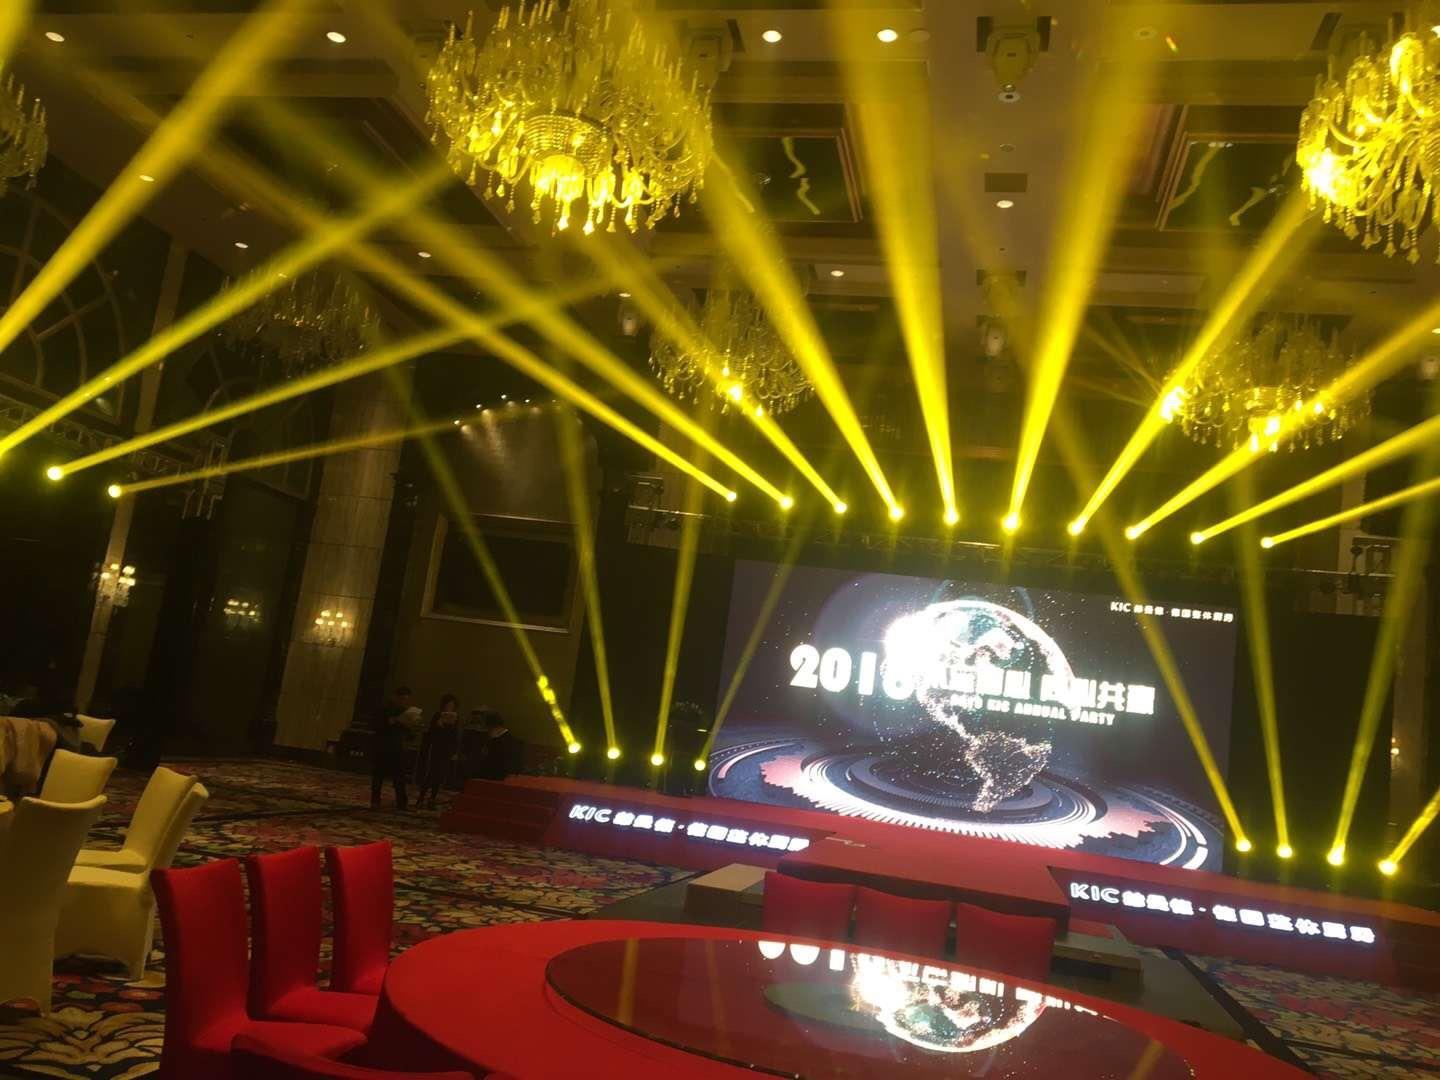 上海大型会议灯光设备租赁公司 上海束影文化传播有限公司